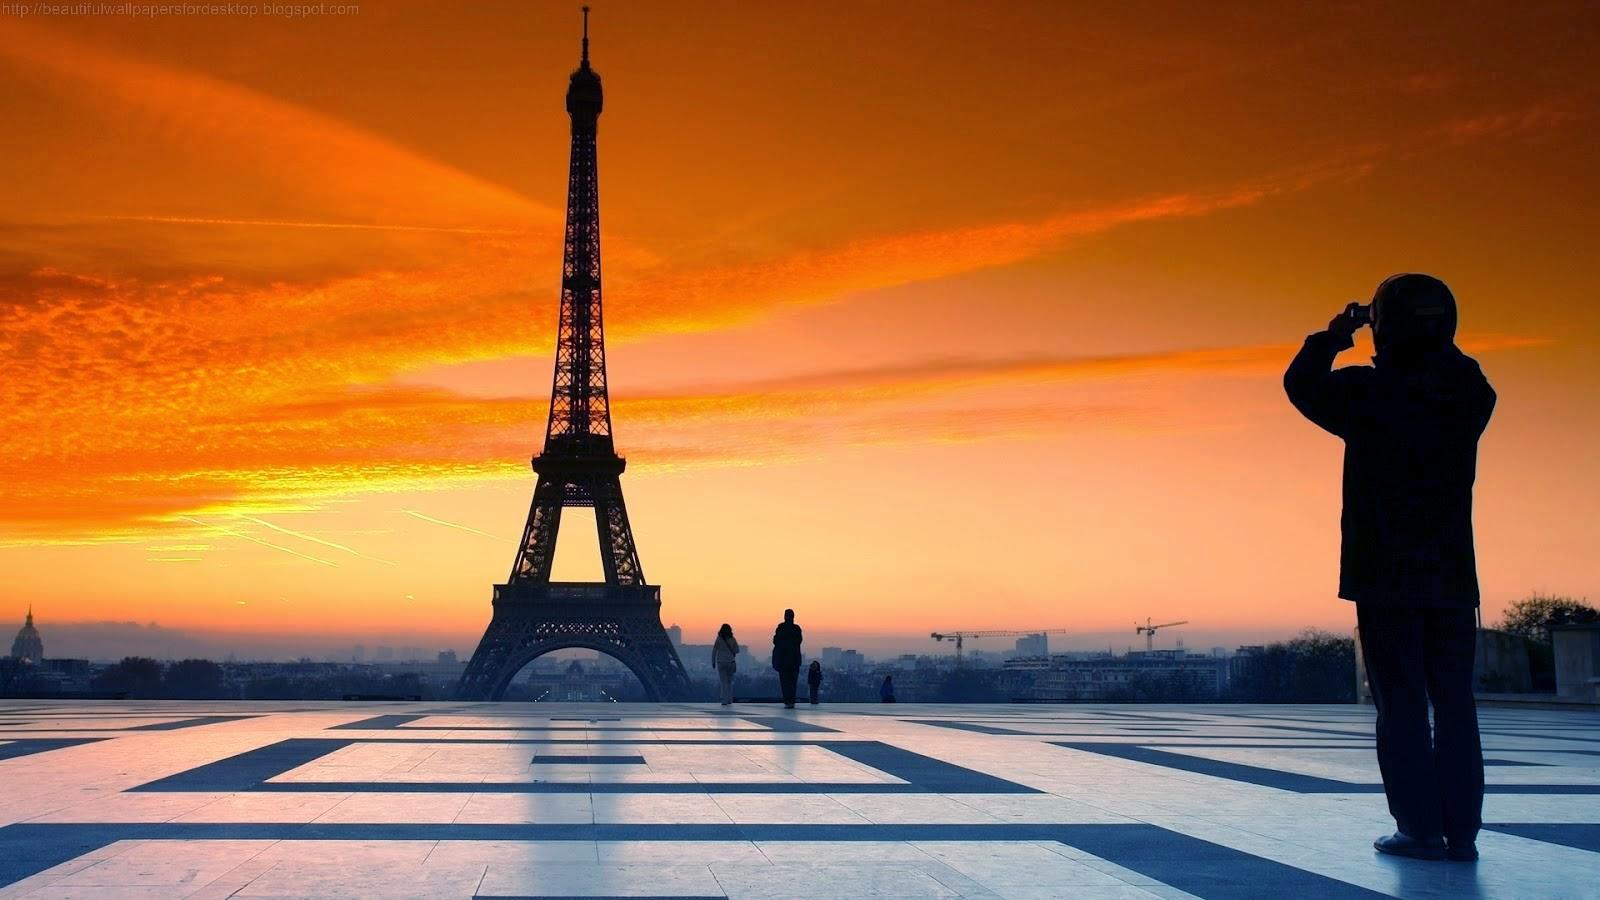 Hình nền 1600x900 Tháp Eiffel tuyệt vời vào thời điểm buổi tối.  tháp Eiffel